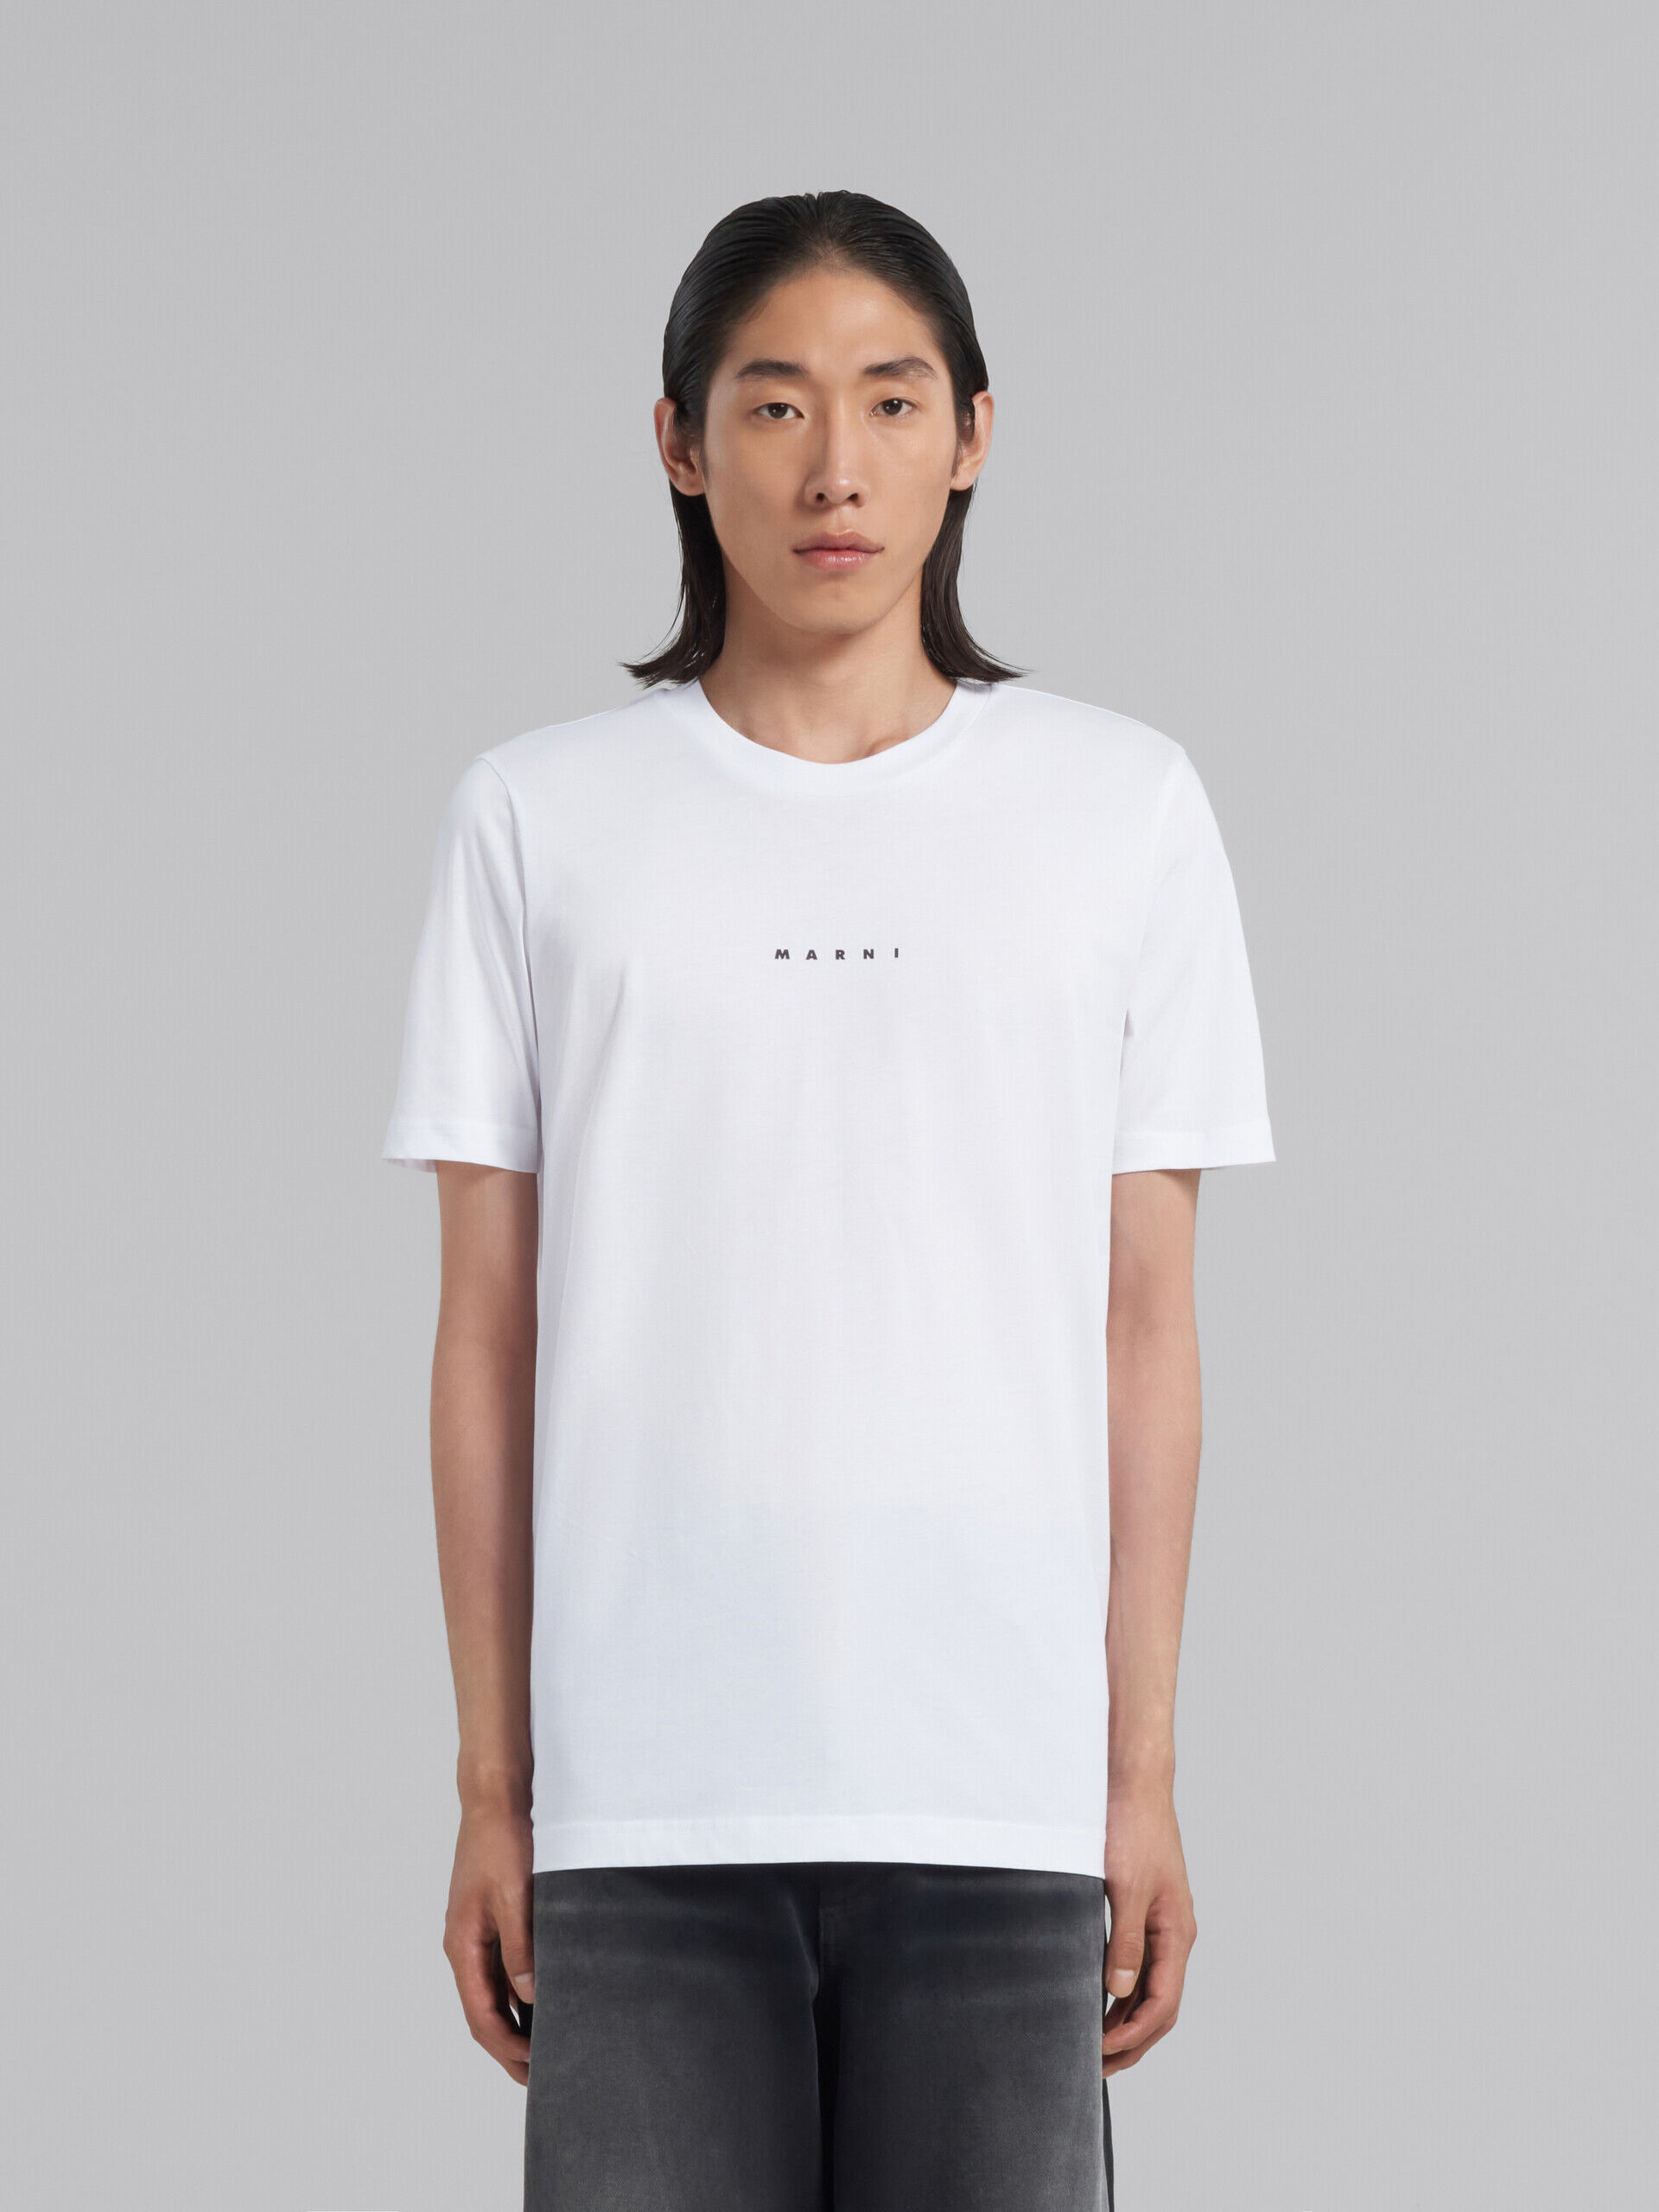 【新品】MARNI  デザイン半袖シャツ 50サイズ